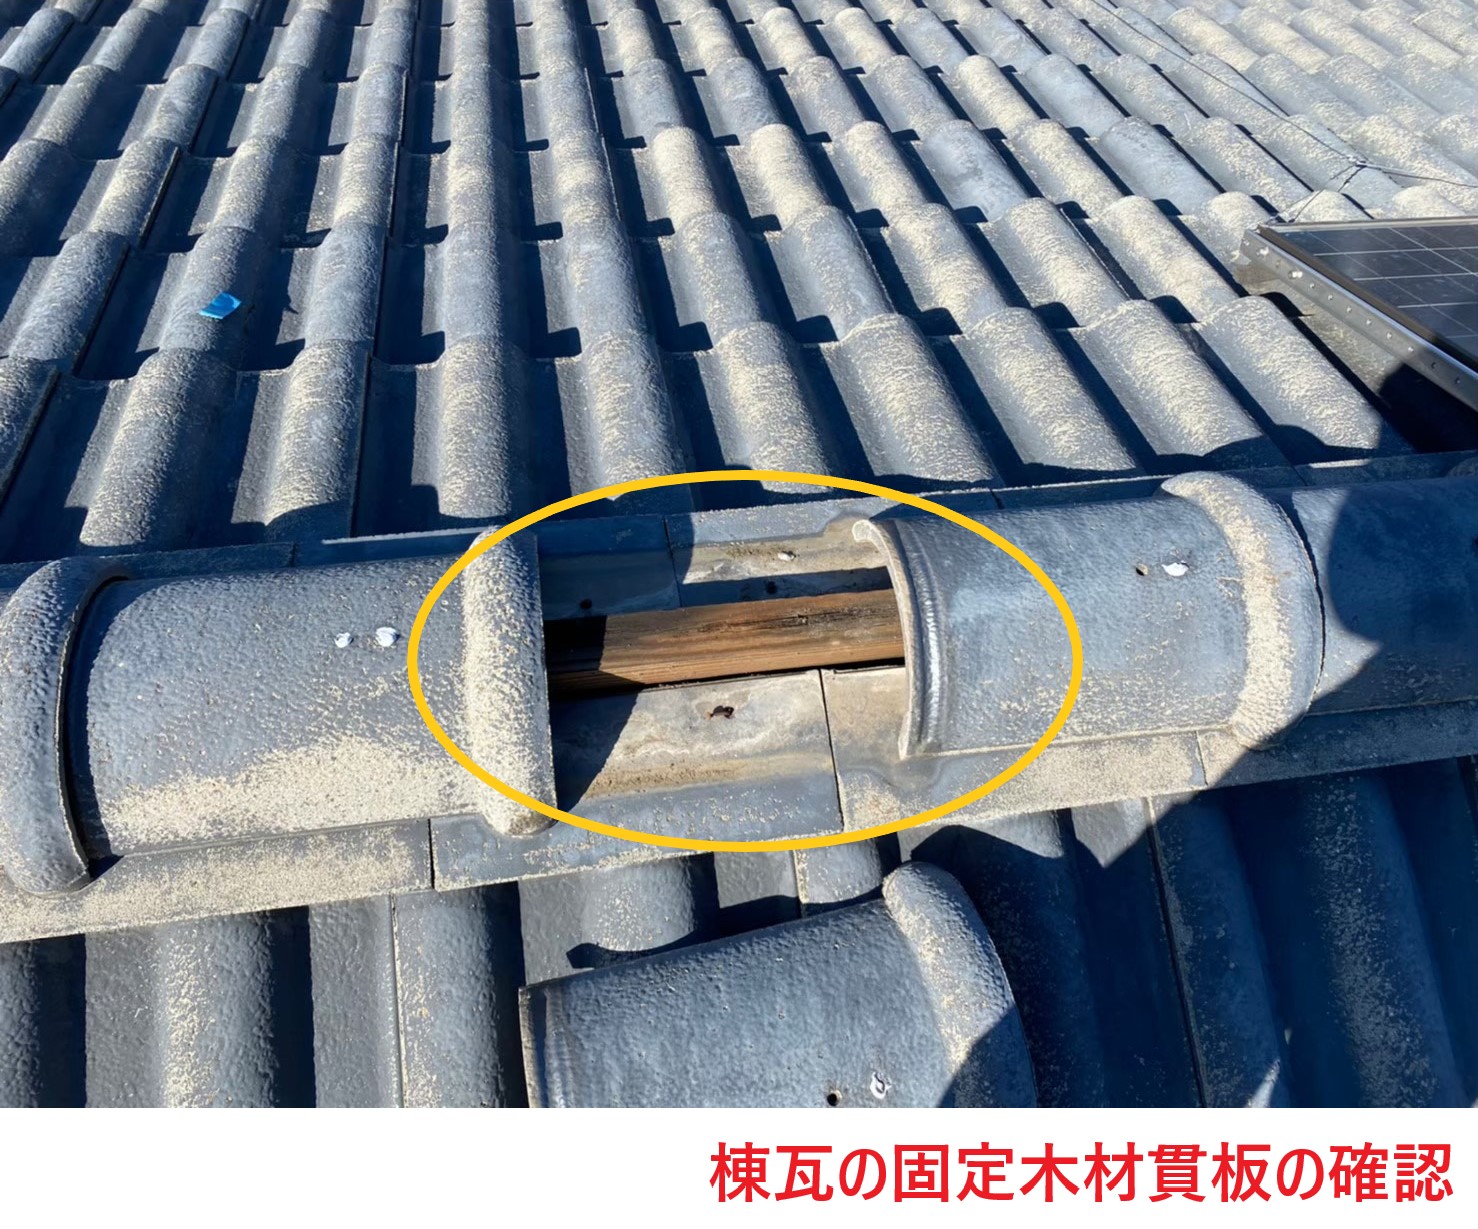 棟瓦の固定木材貫板の確認